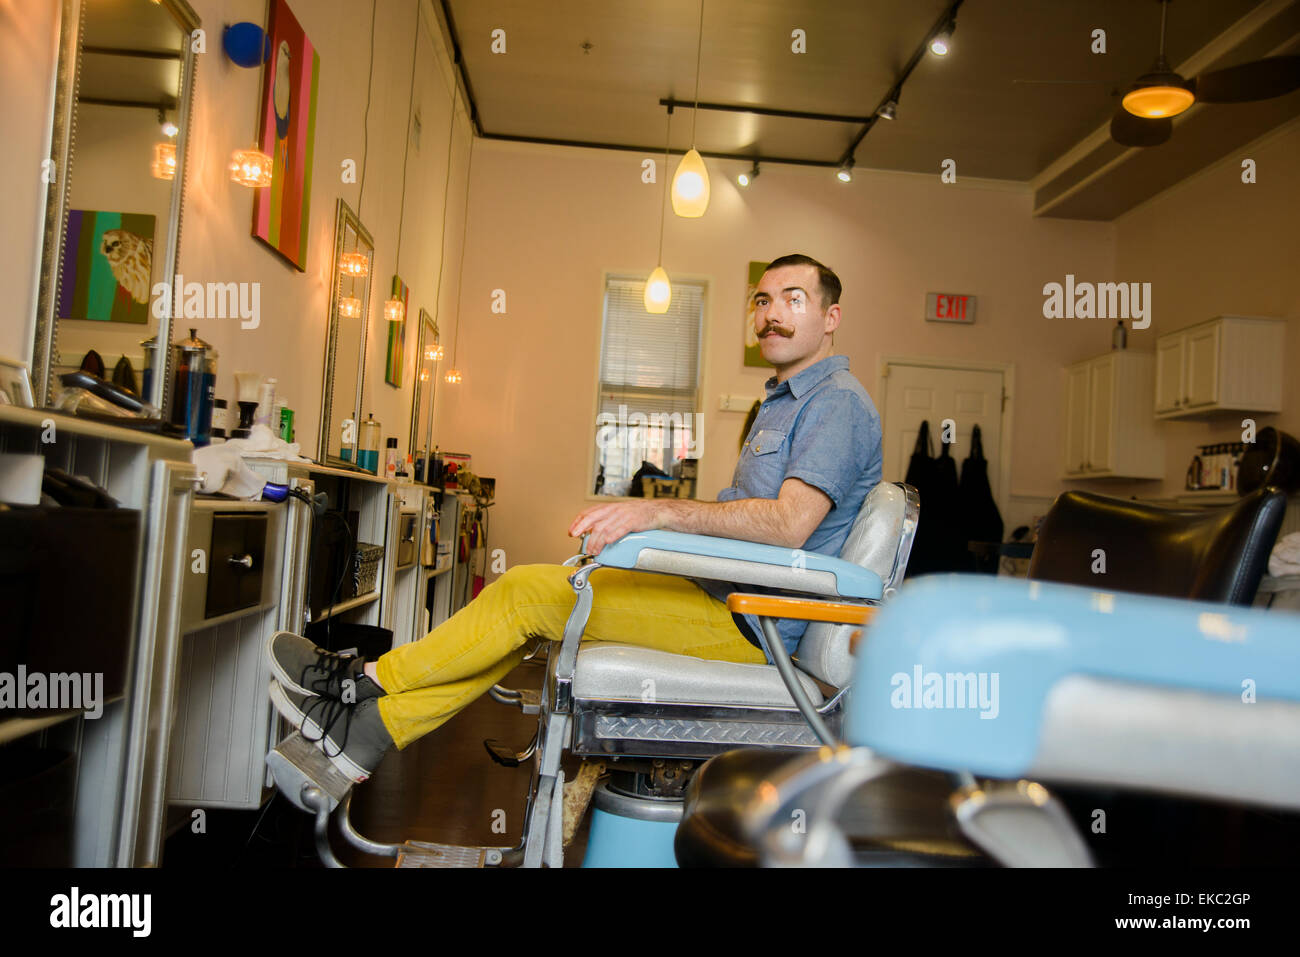 Jeune homme assis sur une chaise dans un salon de coiffure Banque D'Images